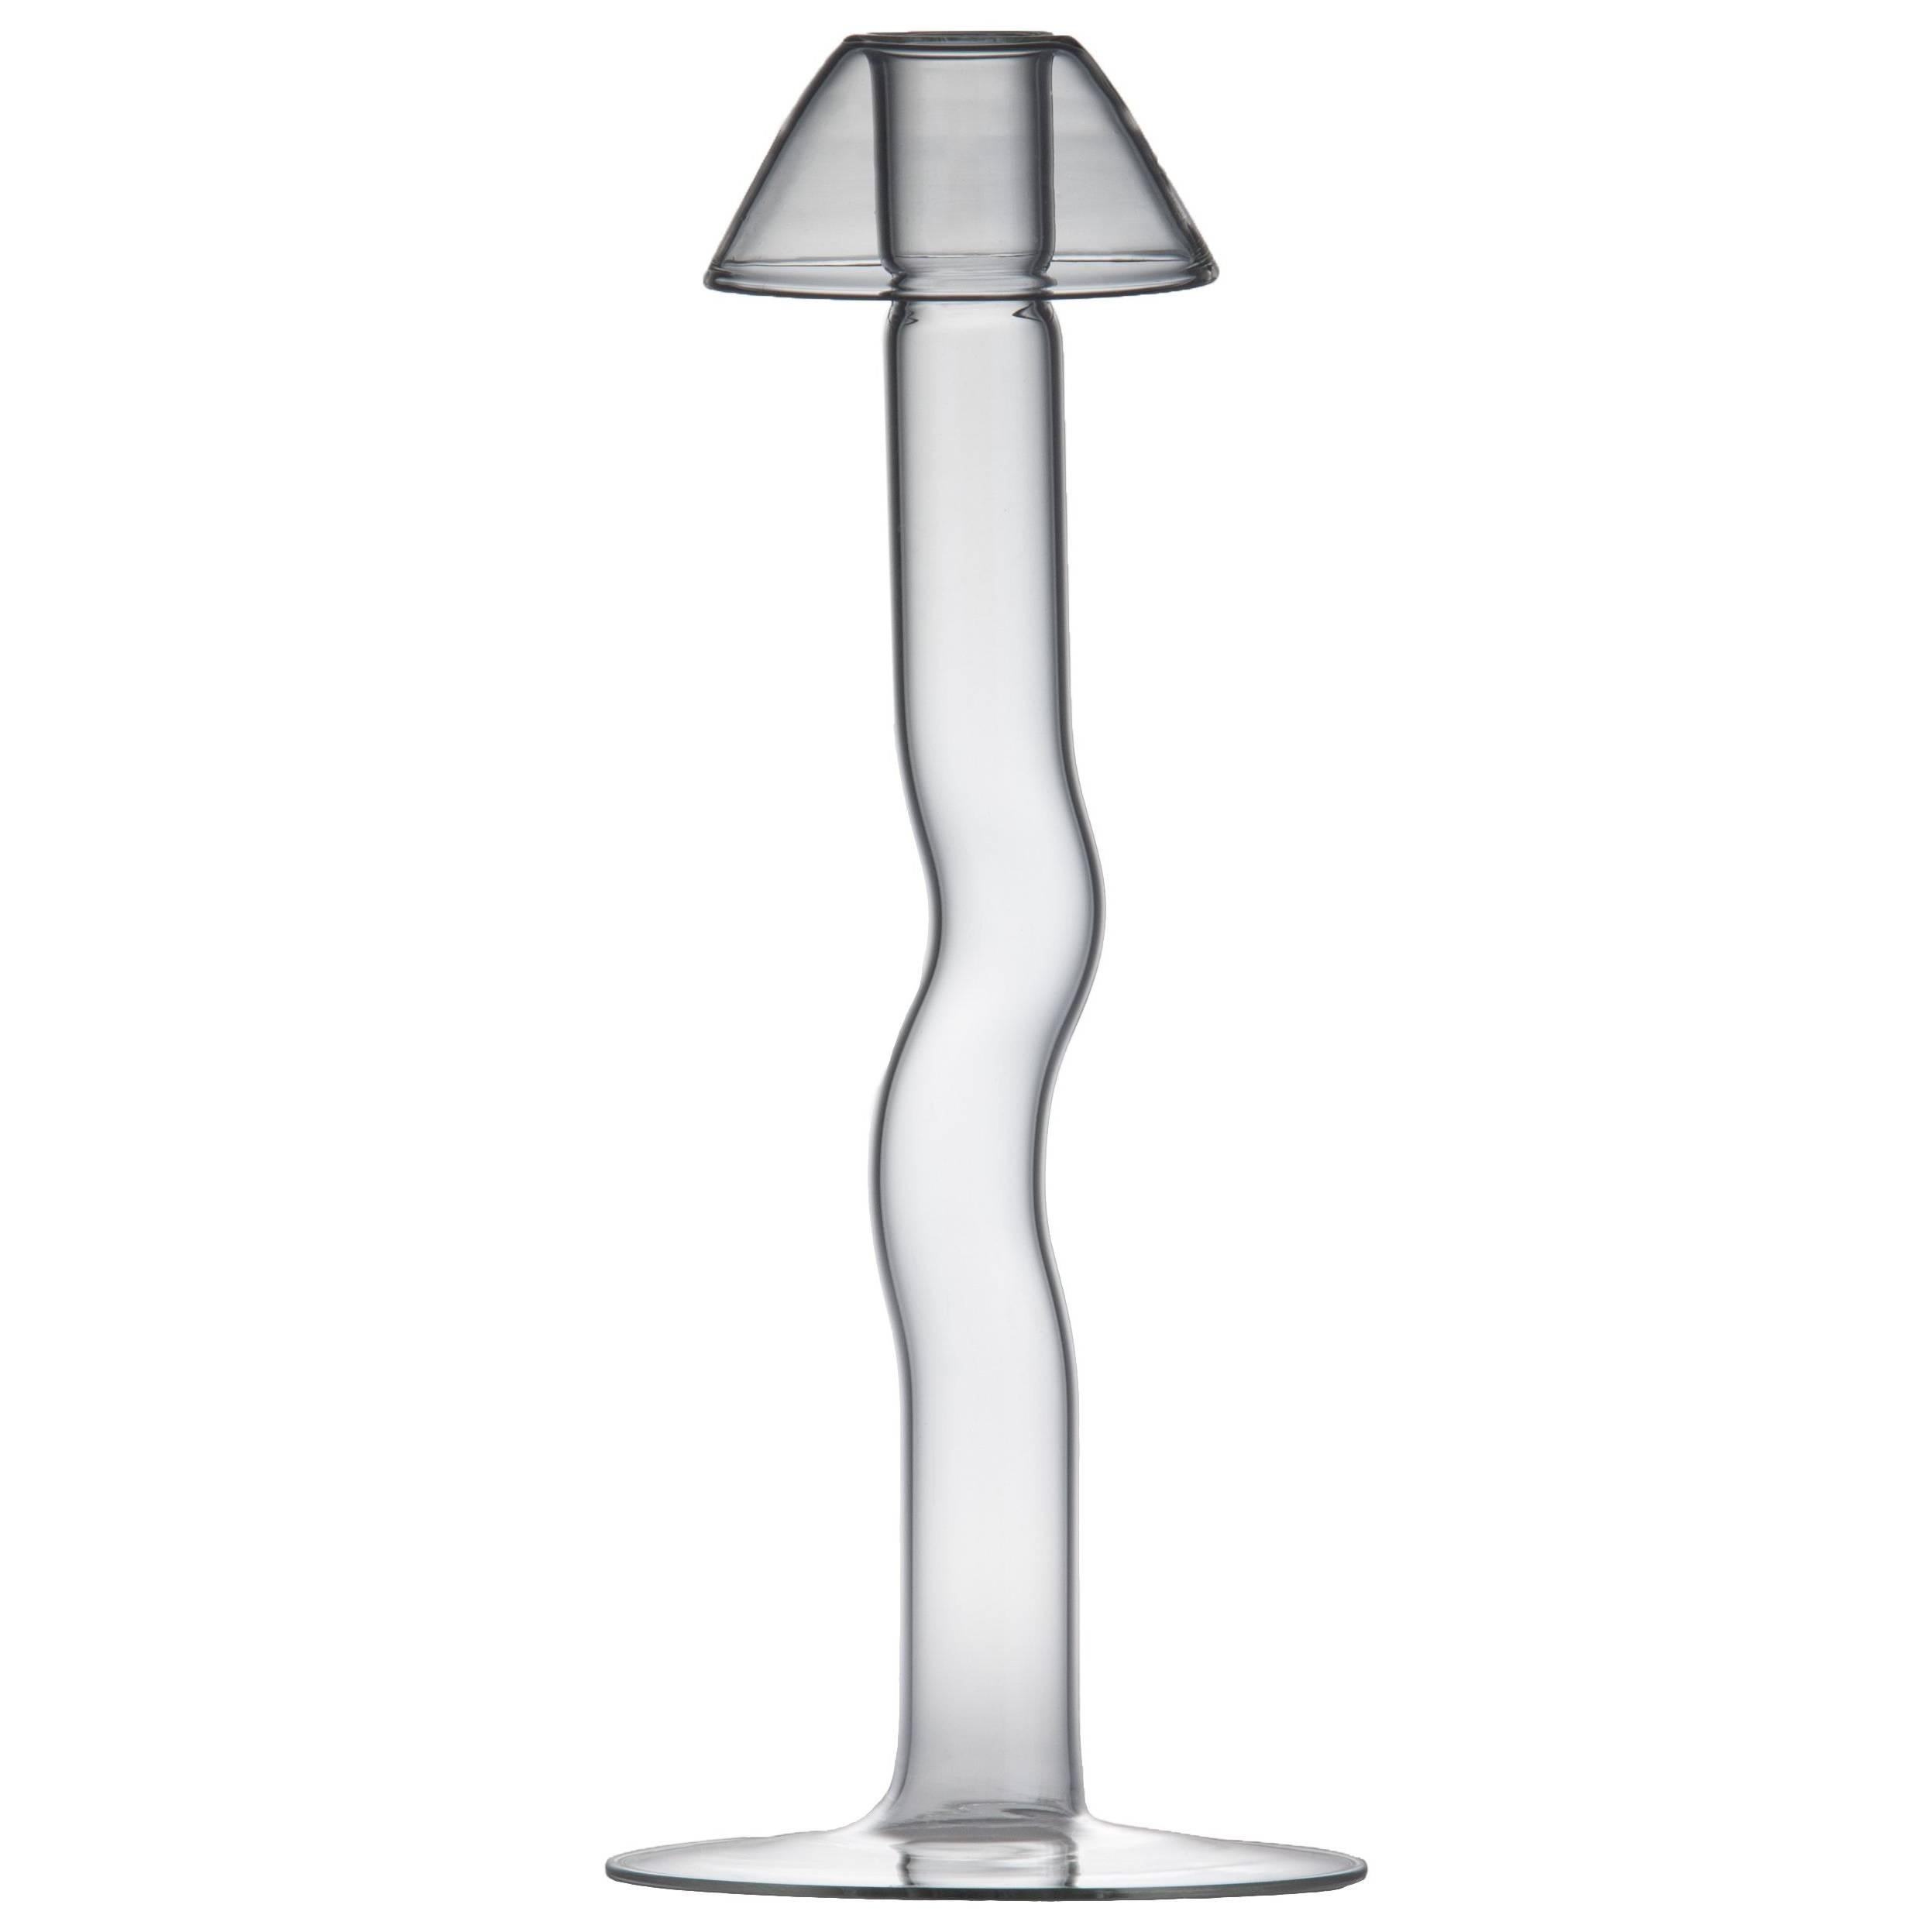 Mykes Glass Candleholder by Giorgio Bonaguro for Driade